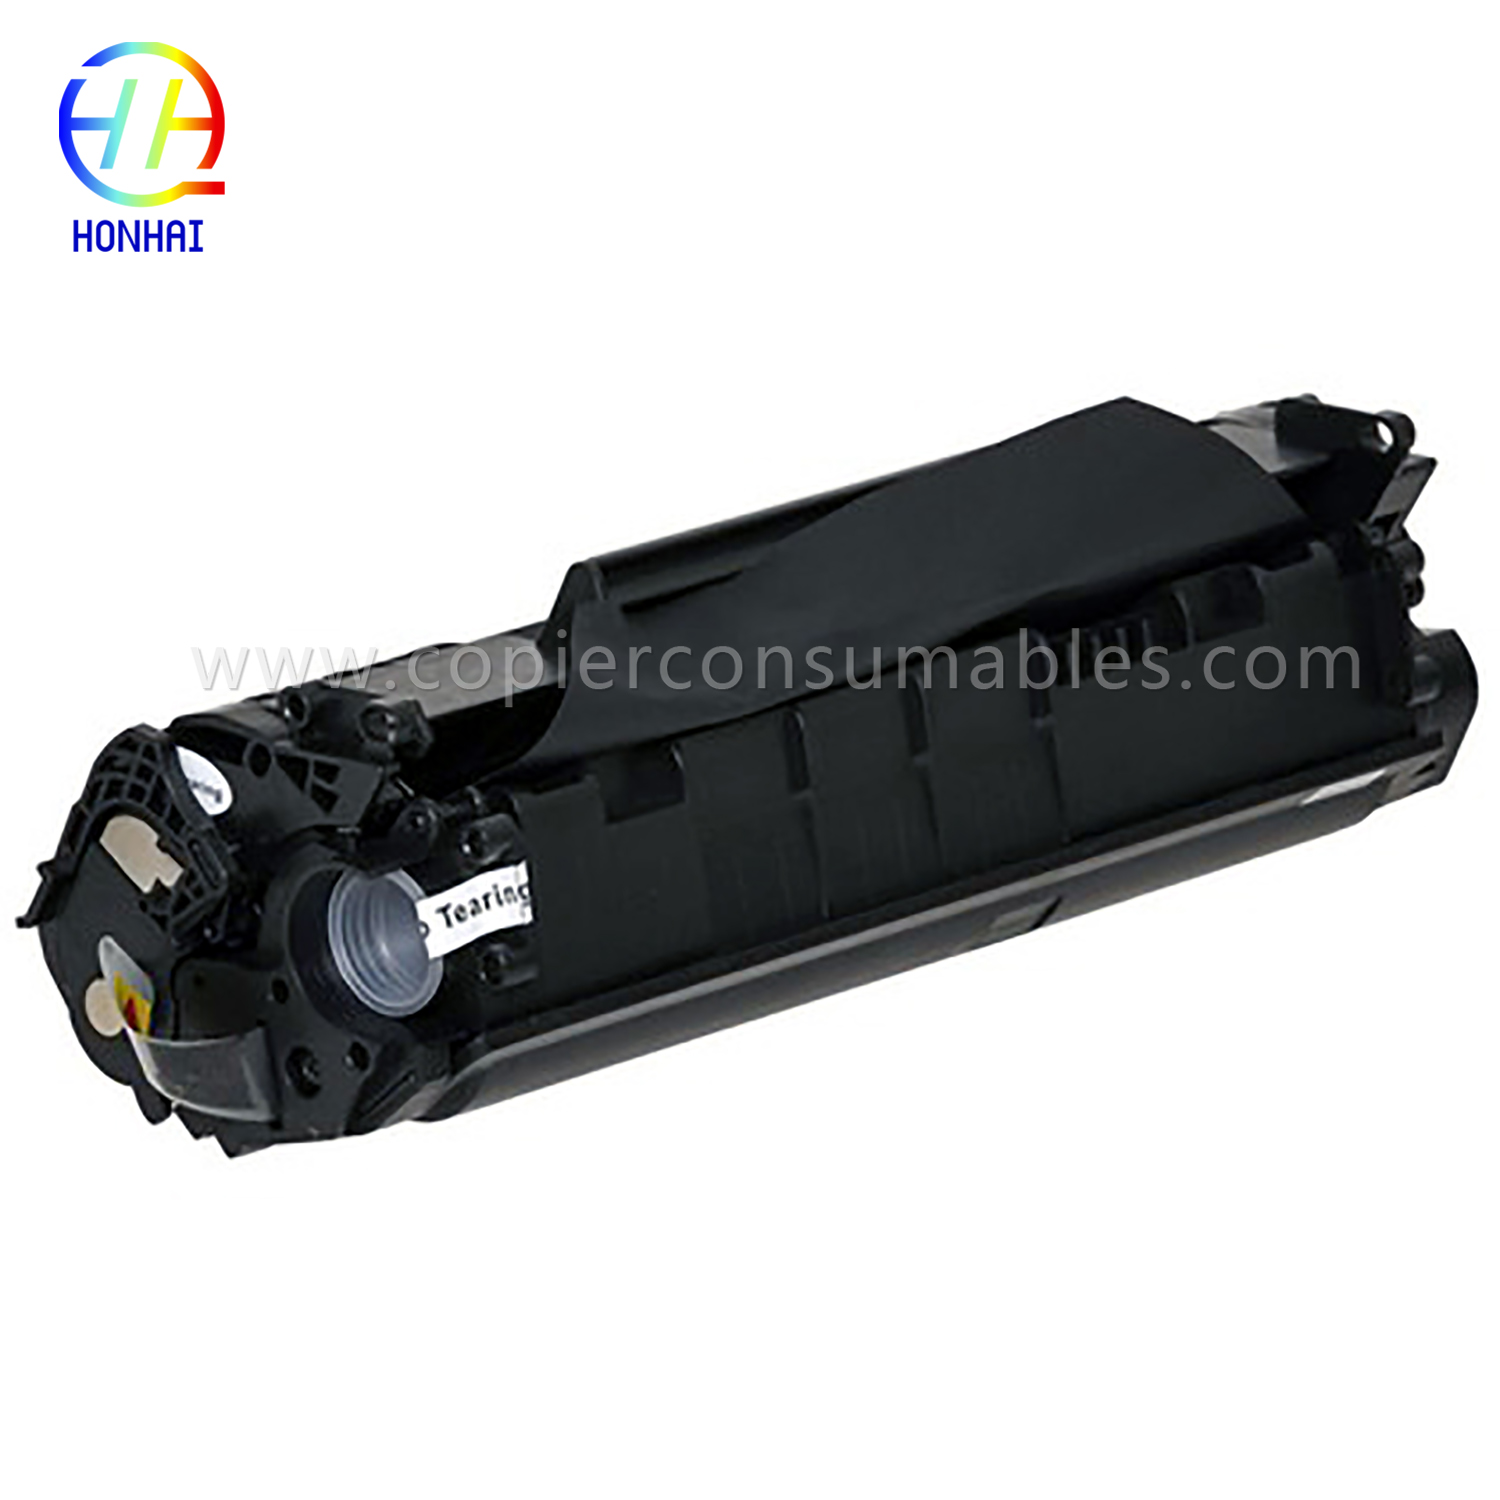 Black Toner Cartridge HP LaserJet 1010 1012 1015 1018 1020 3015 3020 3030 3050 3052 3055 M1005MFP M1319f (Q2612A) 13.9x5.2x6.4 -1 拷贝